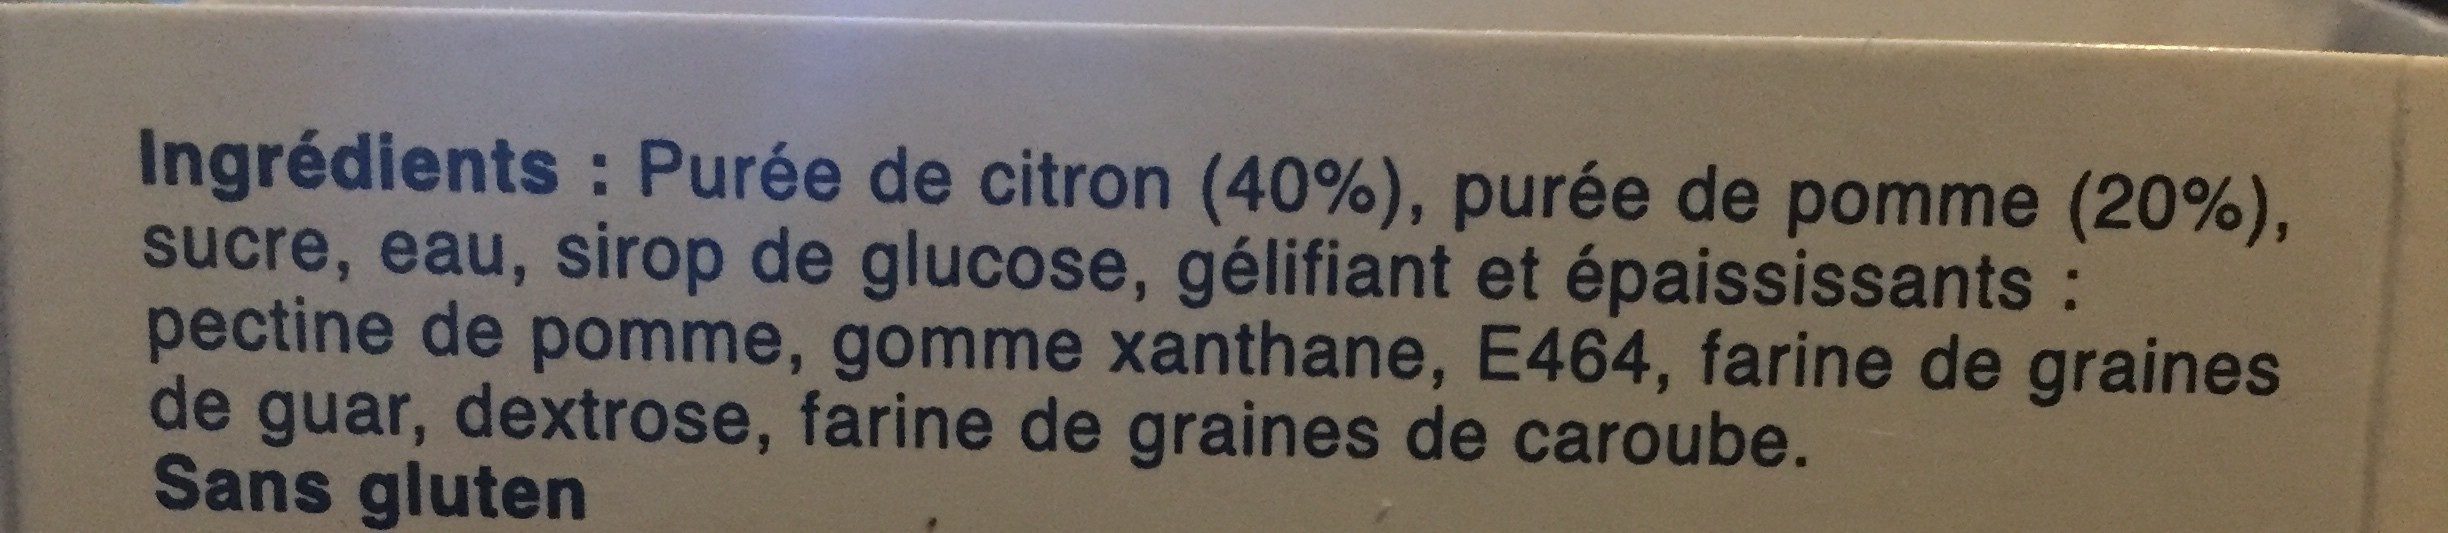 Sorbet Citron - Ingrédients